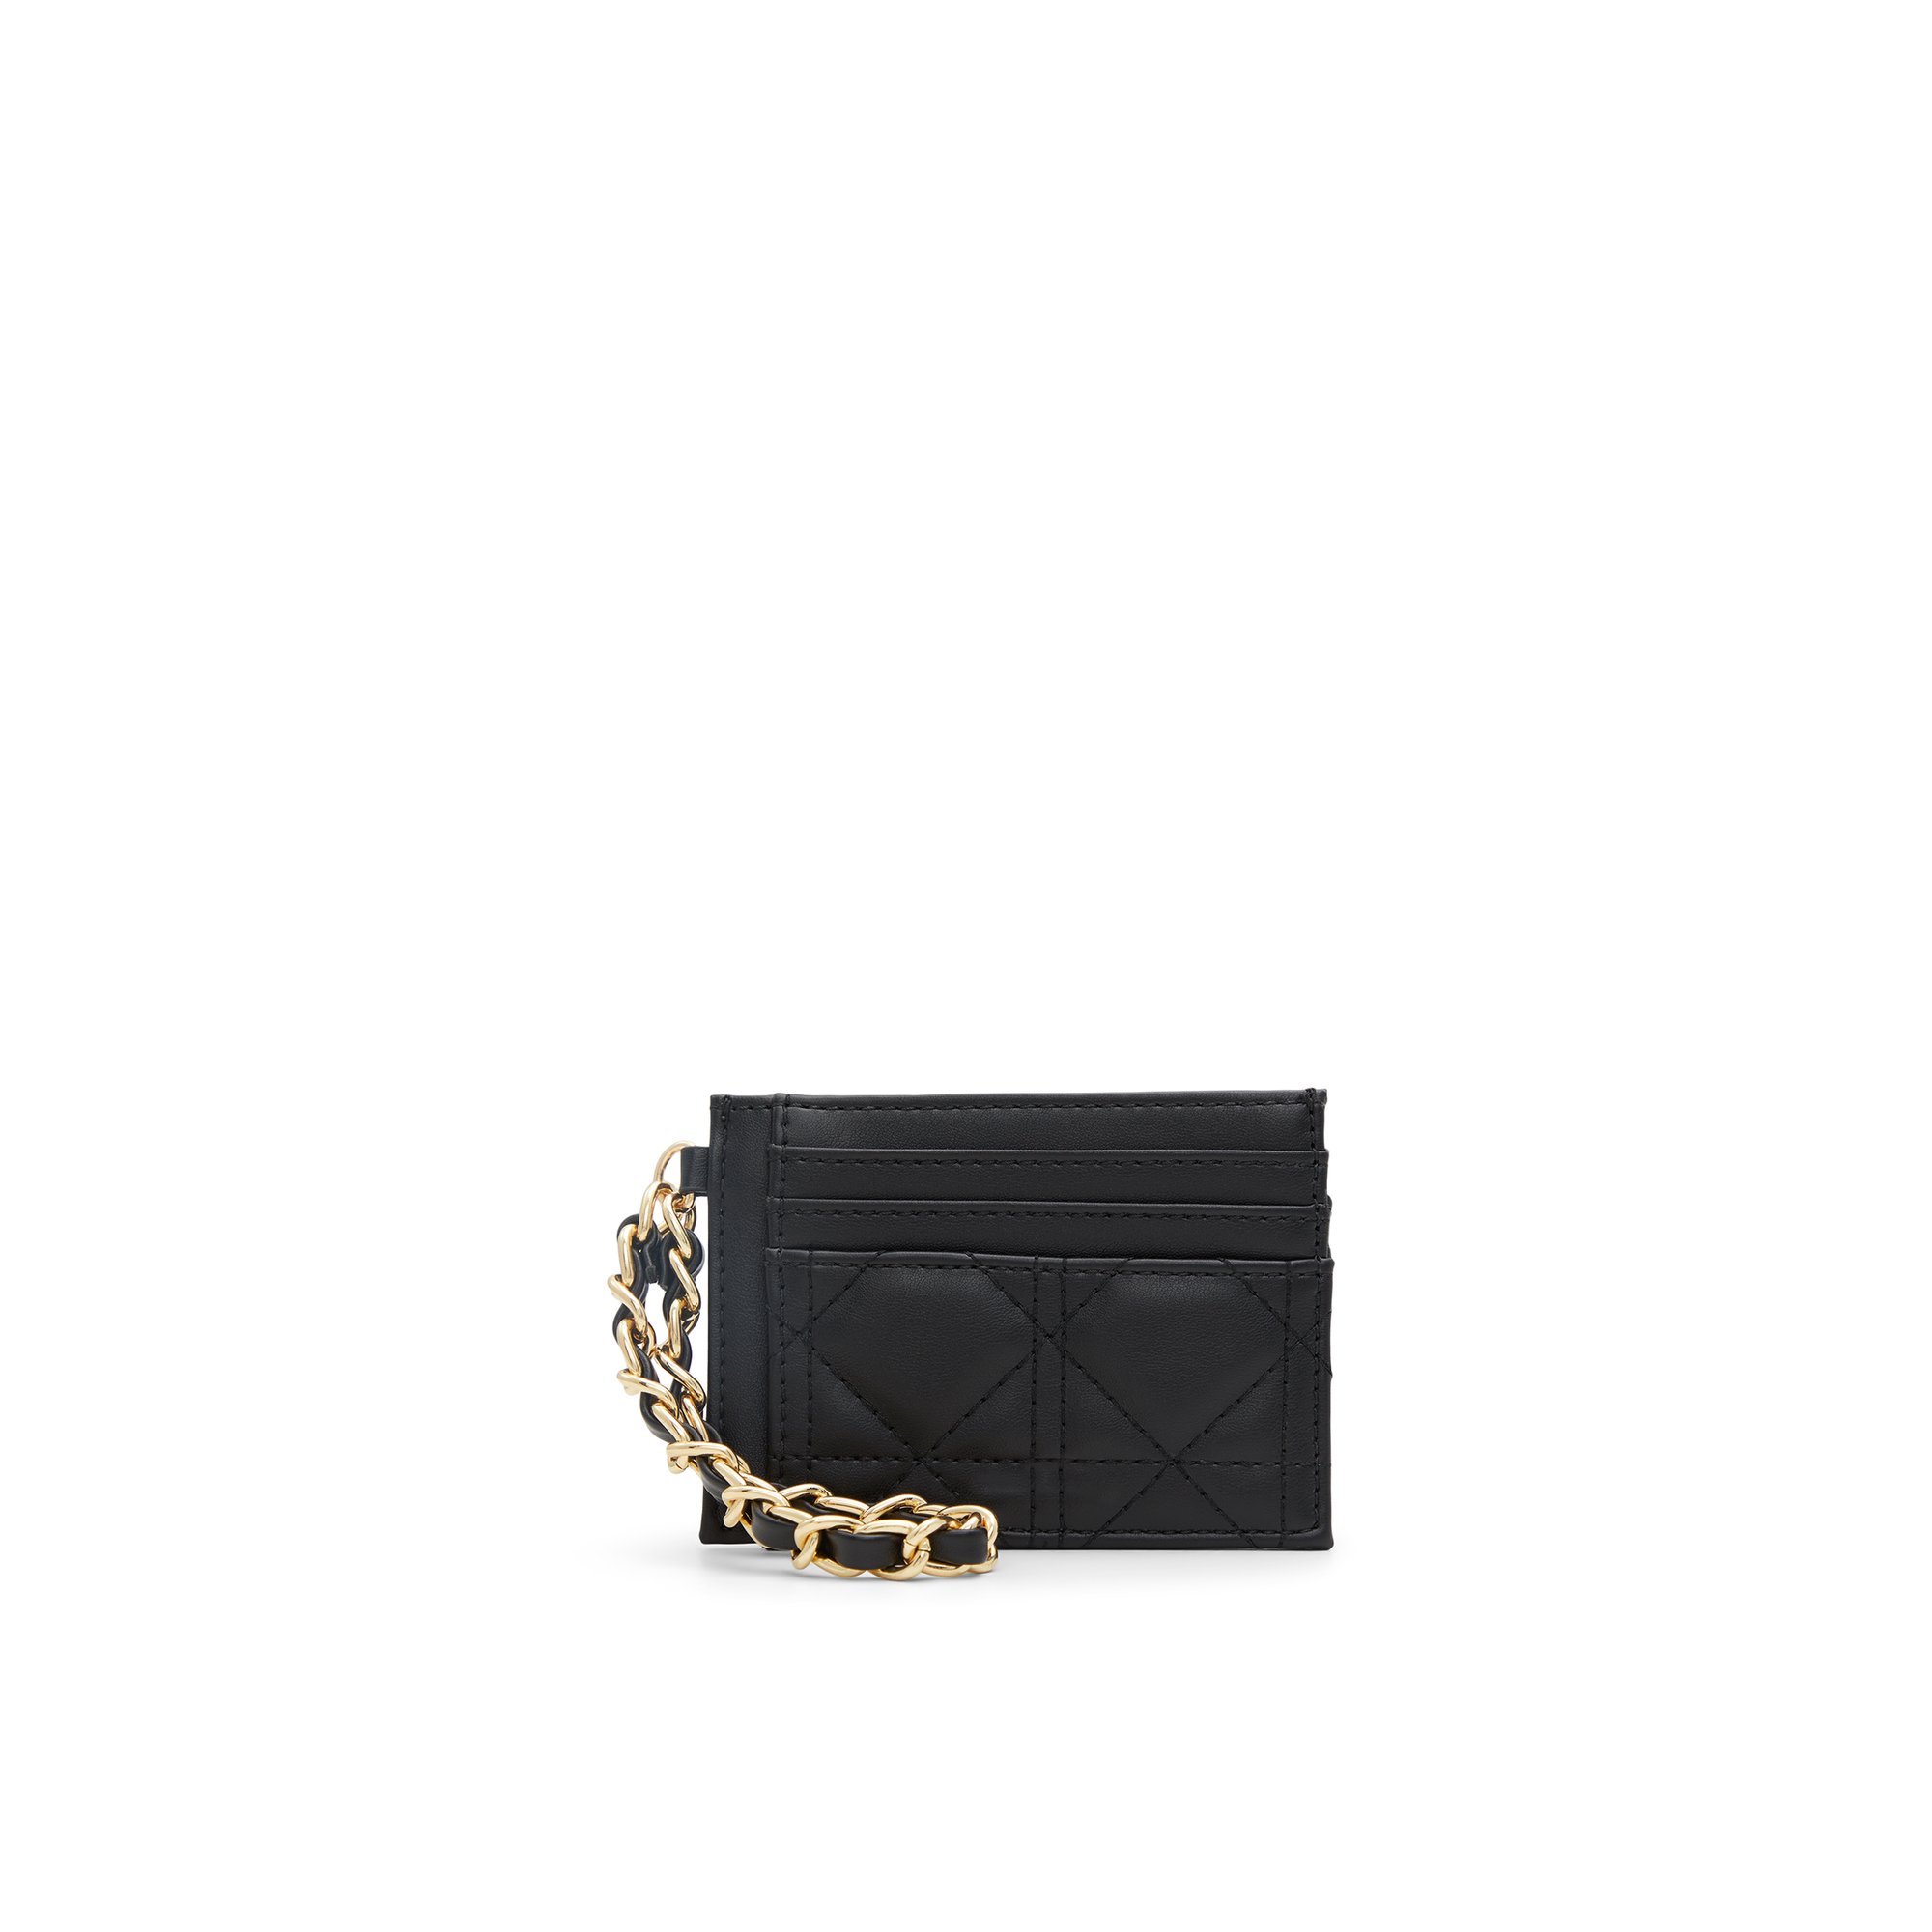 ALDO Ammalix - Women's Wallet Handbag - Black/Gold